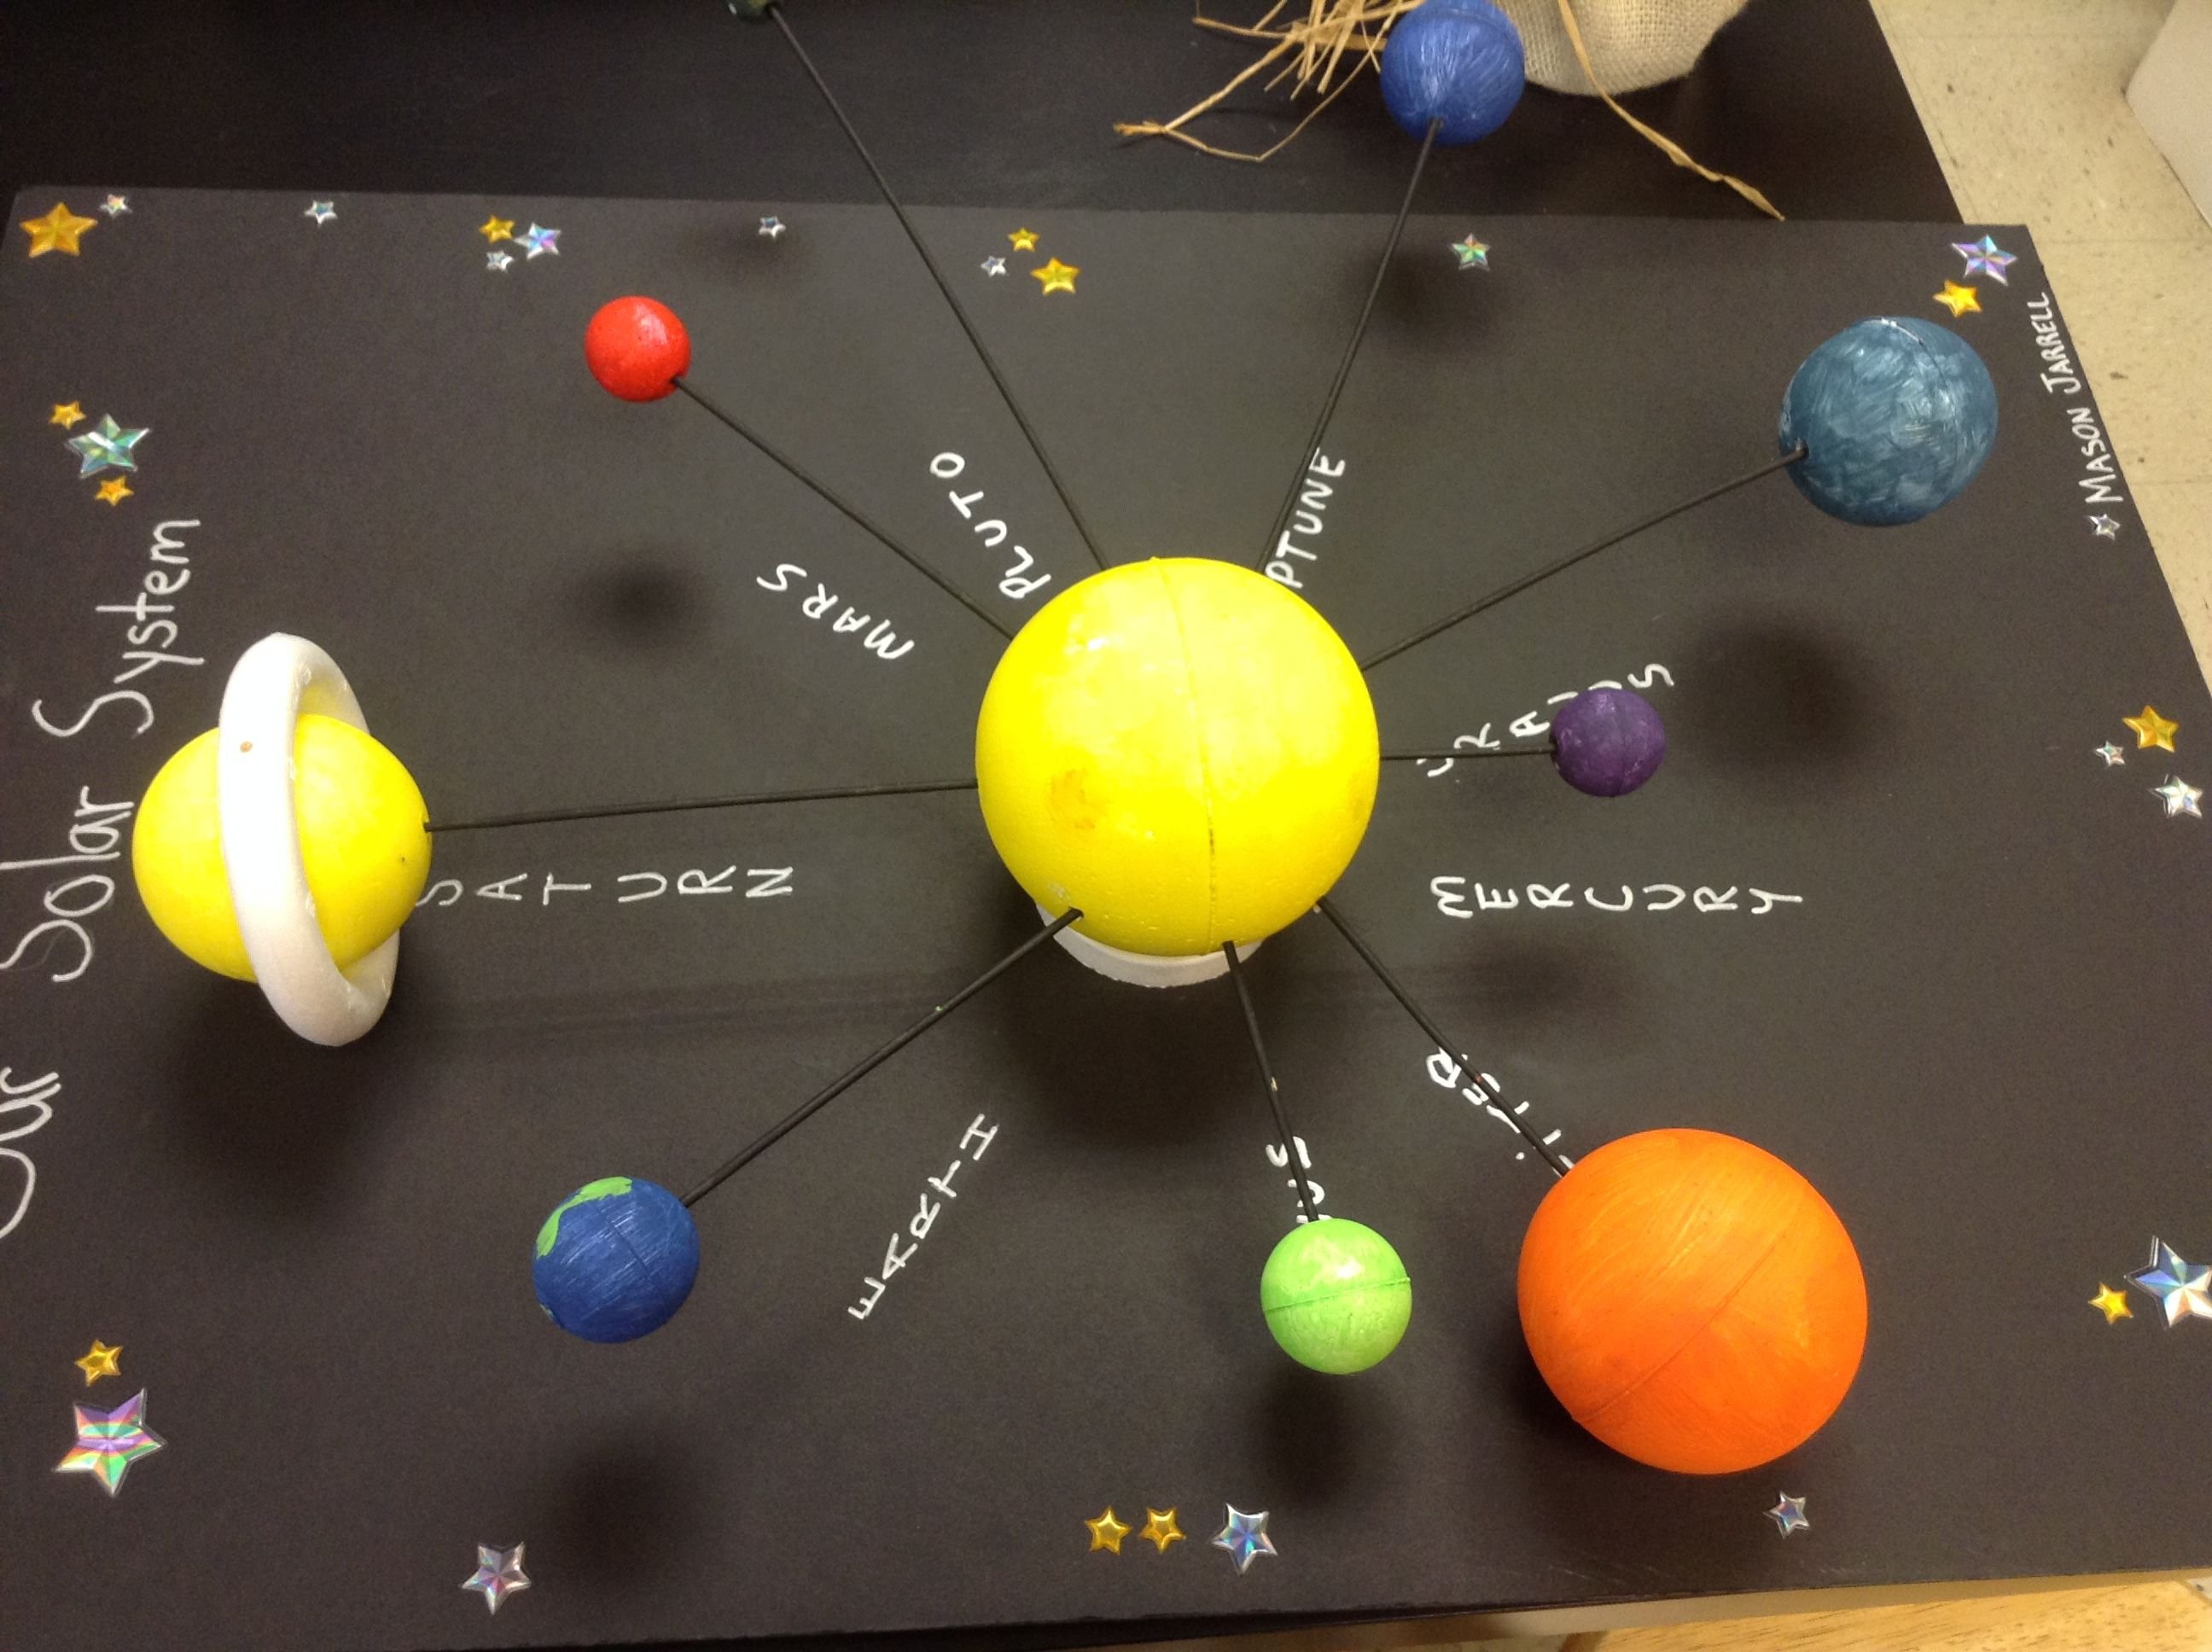 Модель "Солнечная система" (Планетная система; механическая). Вылепить модель солнечной системы (солнце и планеты). Планеты солнечной системы макет из пластилина. Планеты солнечной системы из пенопластовых шаров.